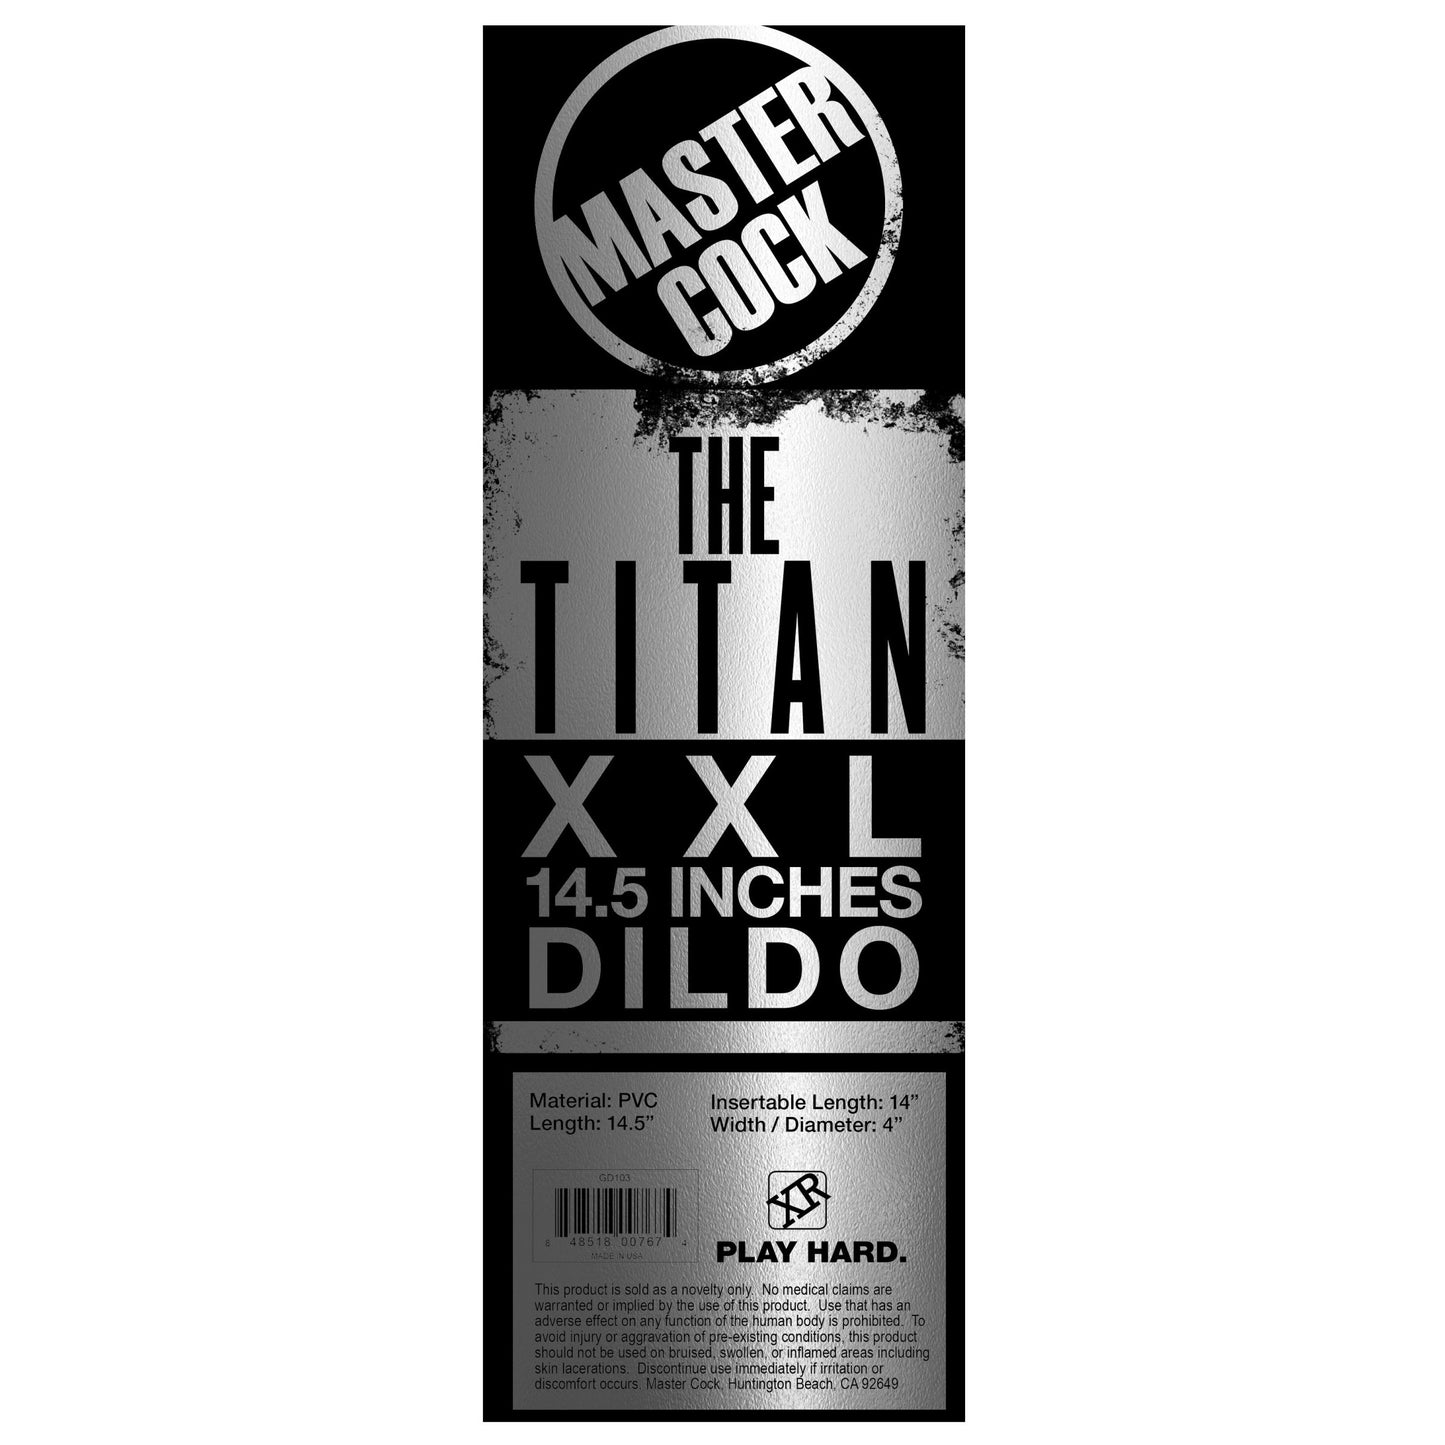 The Titan XXL 14.5 Inch Dildo - UABDSM